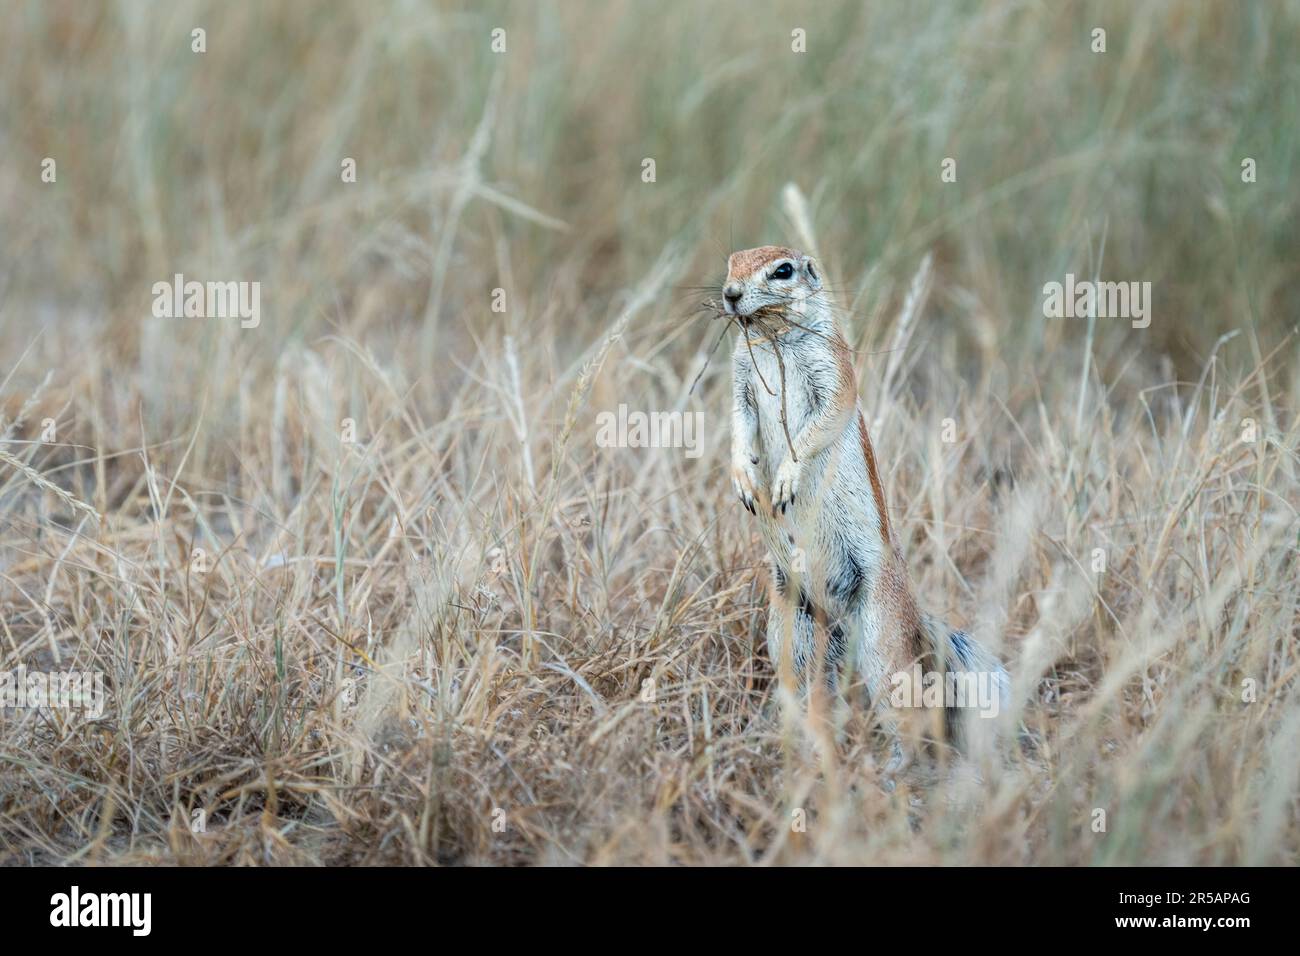 Kaphornhörnchen (Xerus inauris), aufrecht stehend. Wilde Tiere haben Gras im Mund für ihr Nest. Kgalagadi Transfrontier Park, Südafrika Stockfoto